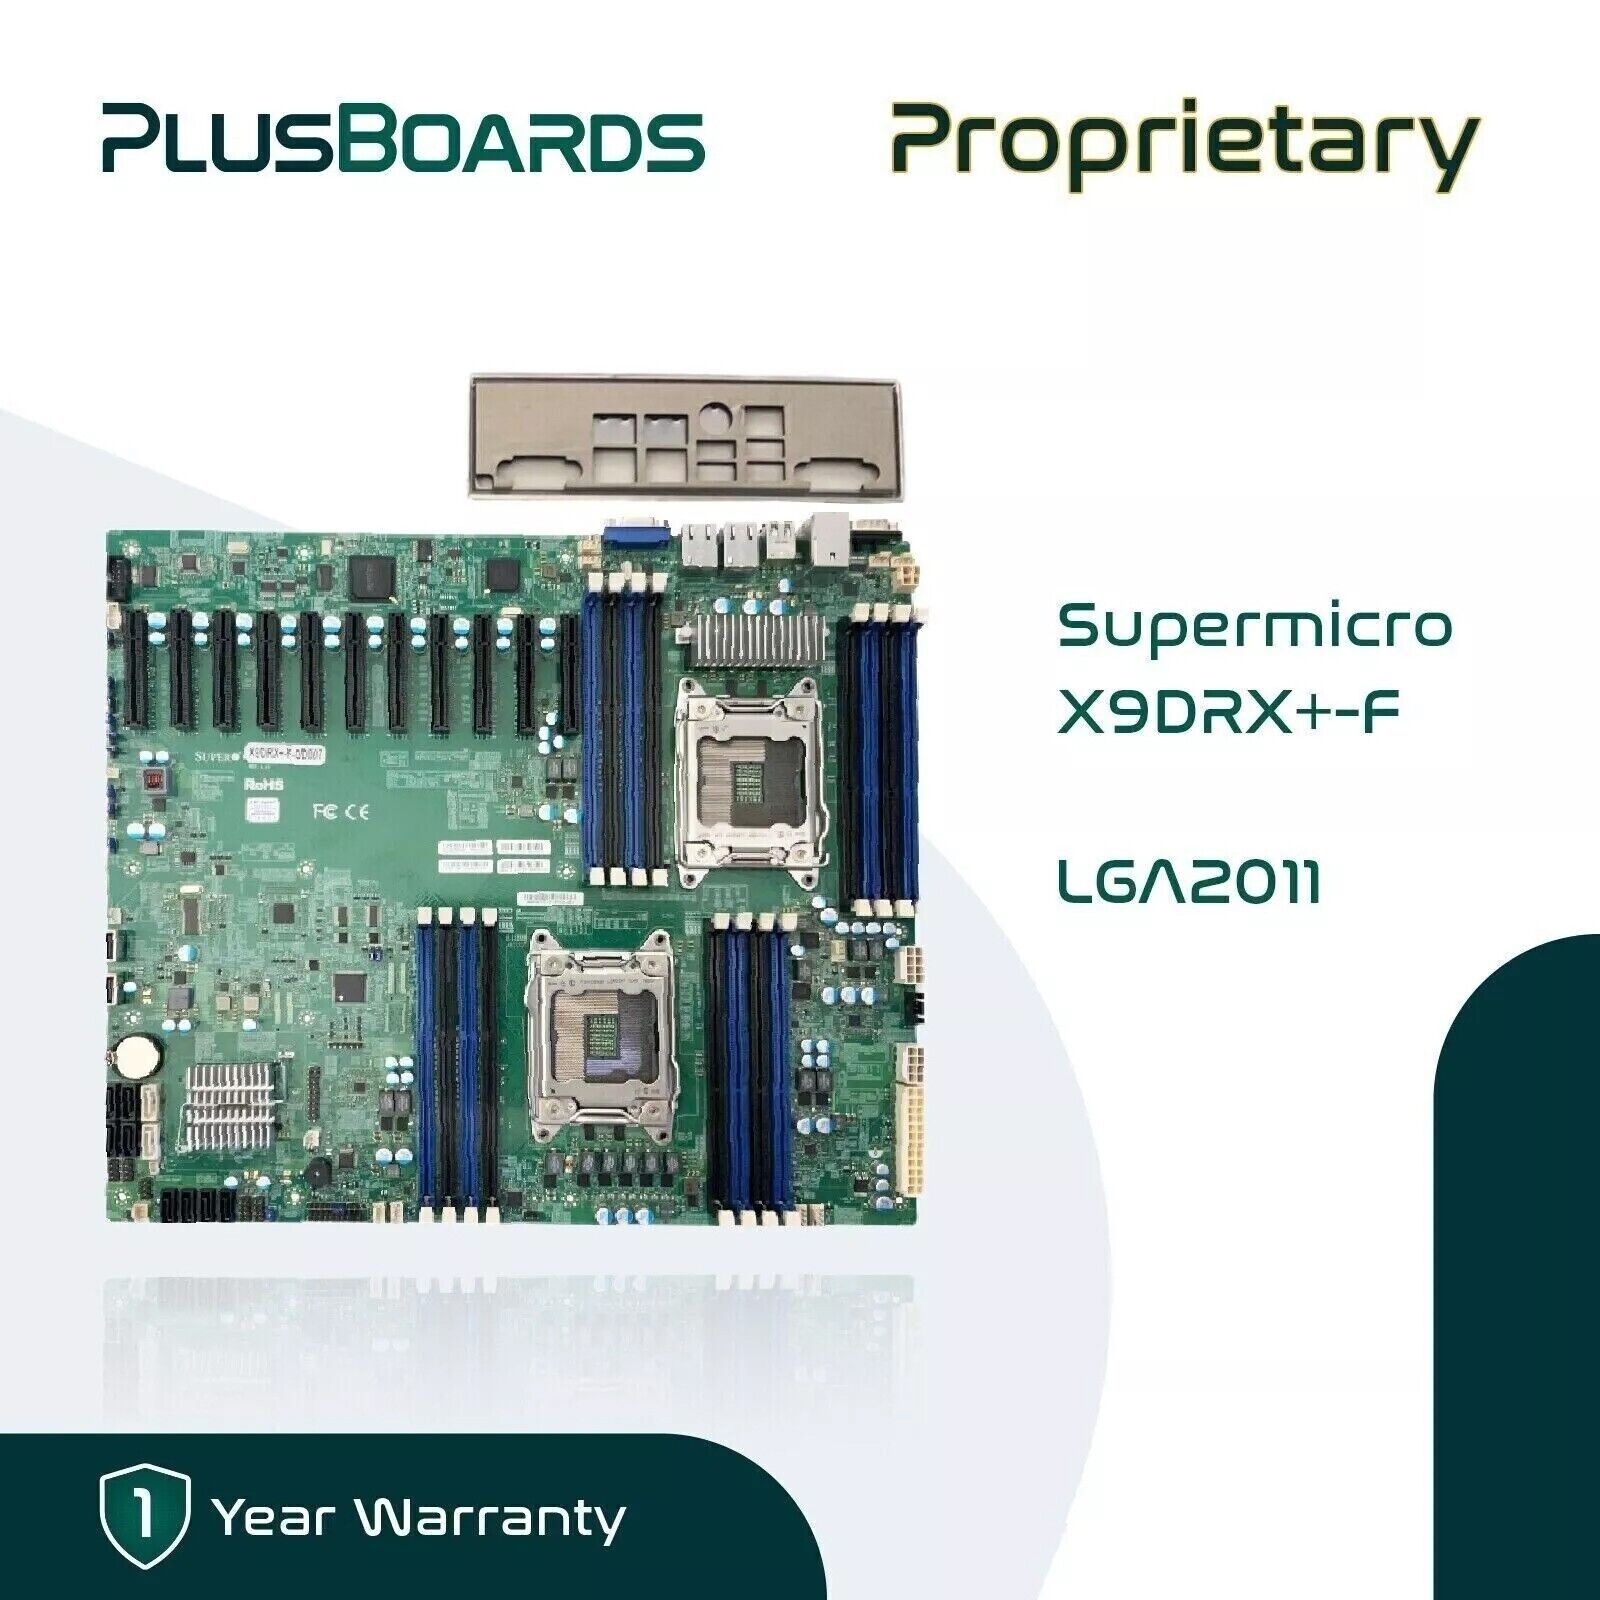 NEW Supermicro X9DRX+-F Proprietary Dual LGA 2011 DDR3 Dual LAN Motherboard